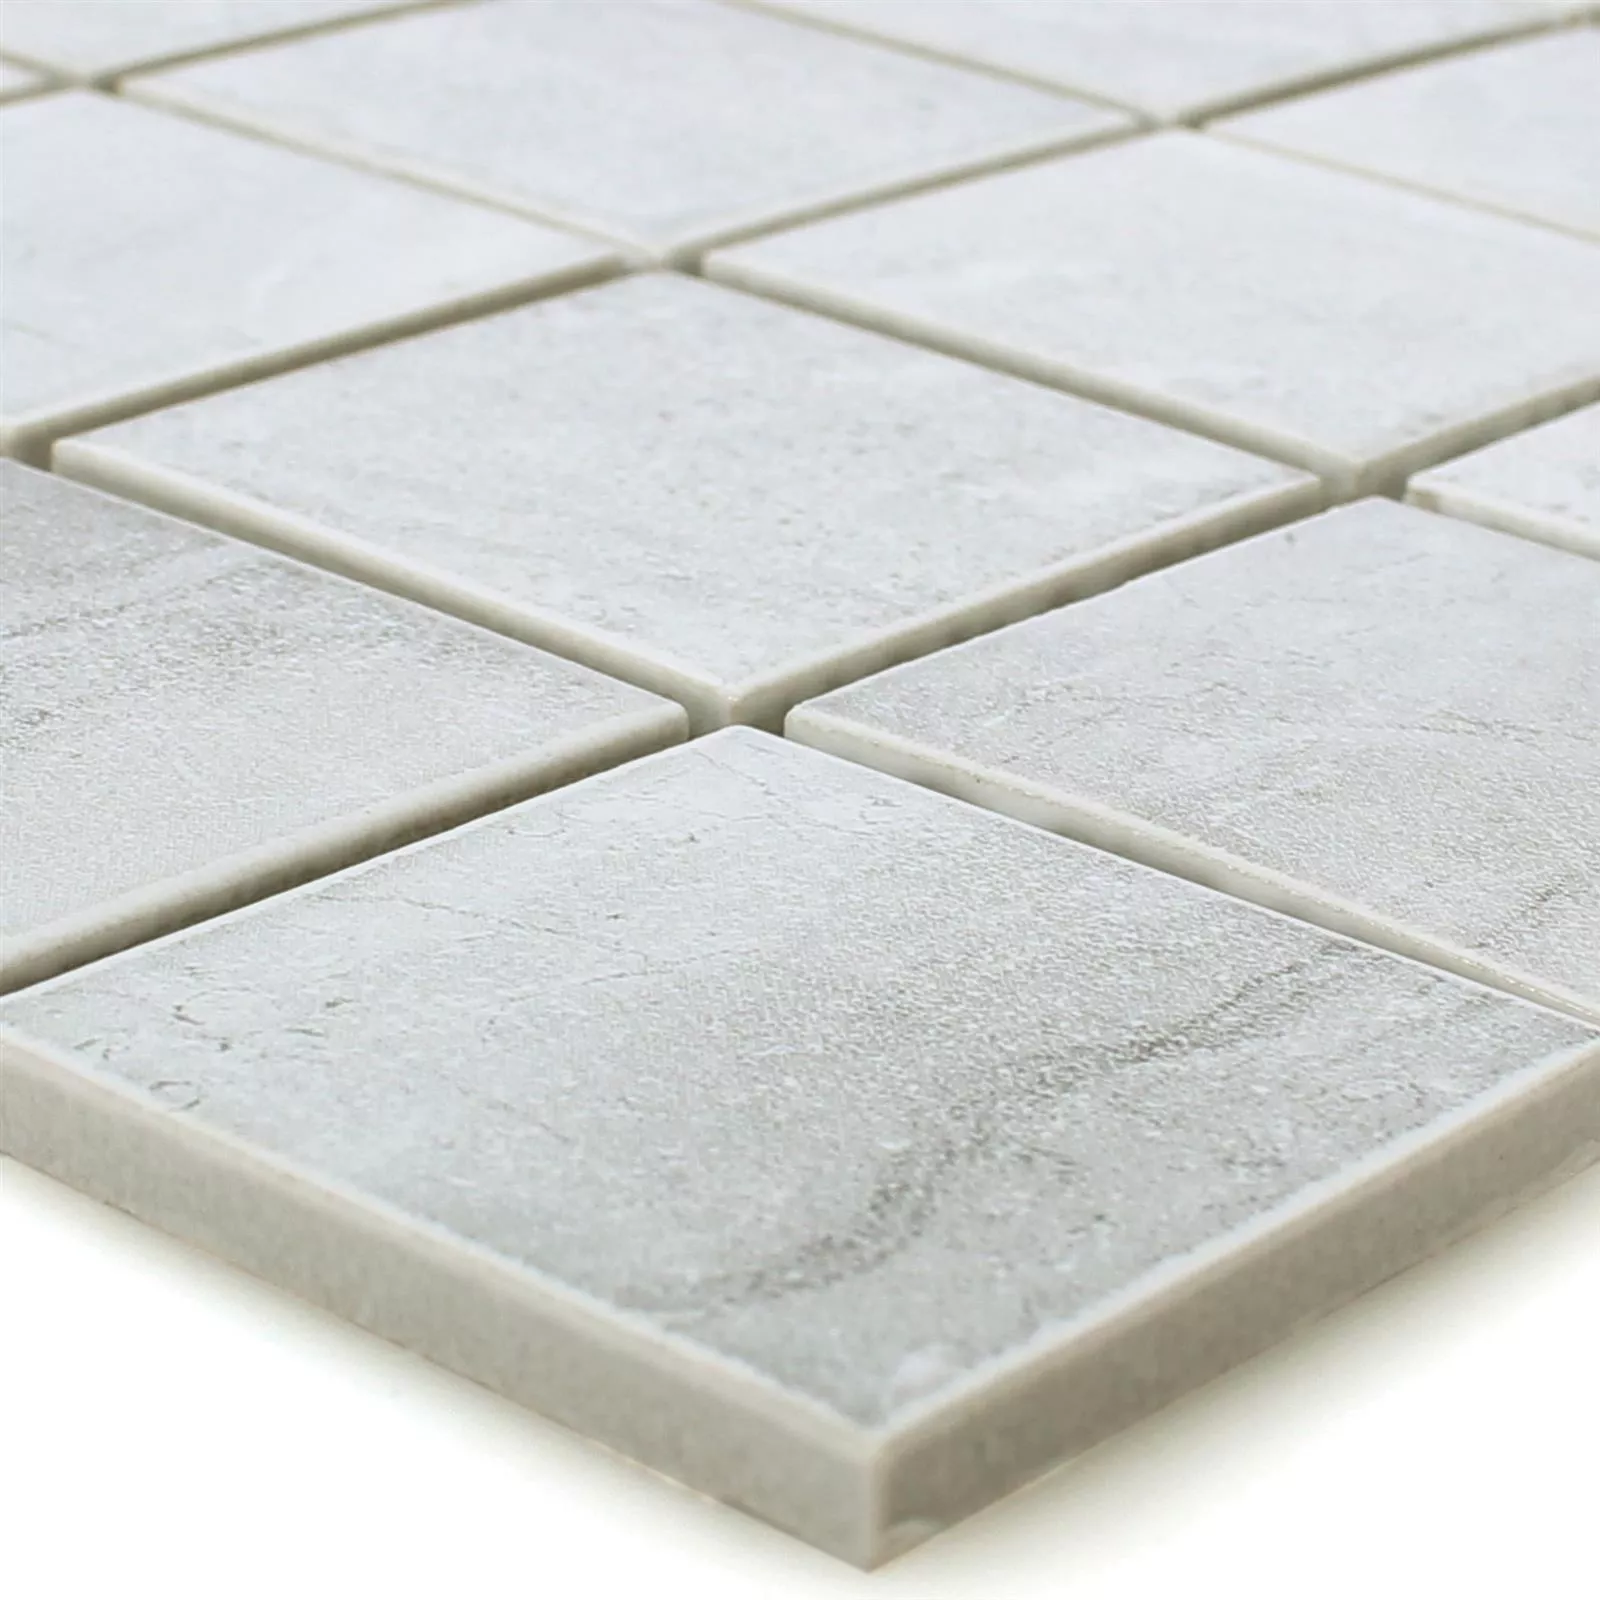 Sample Ceramic Beton Optic Mosaic Tiles Shepherd Grey